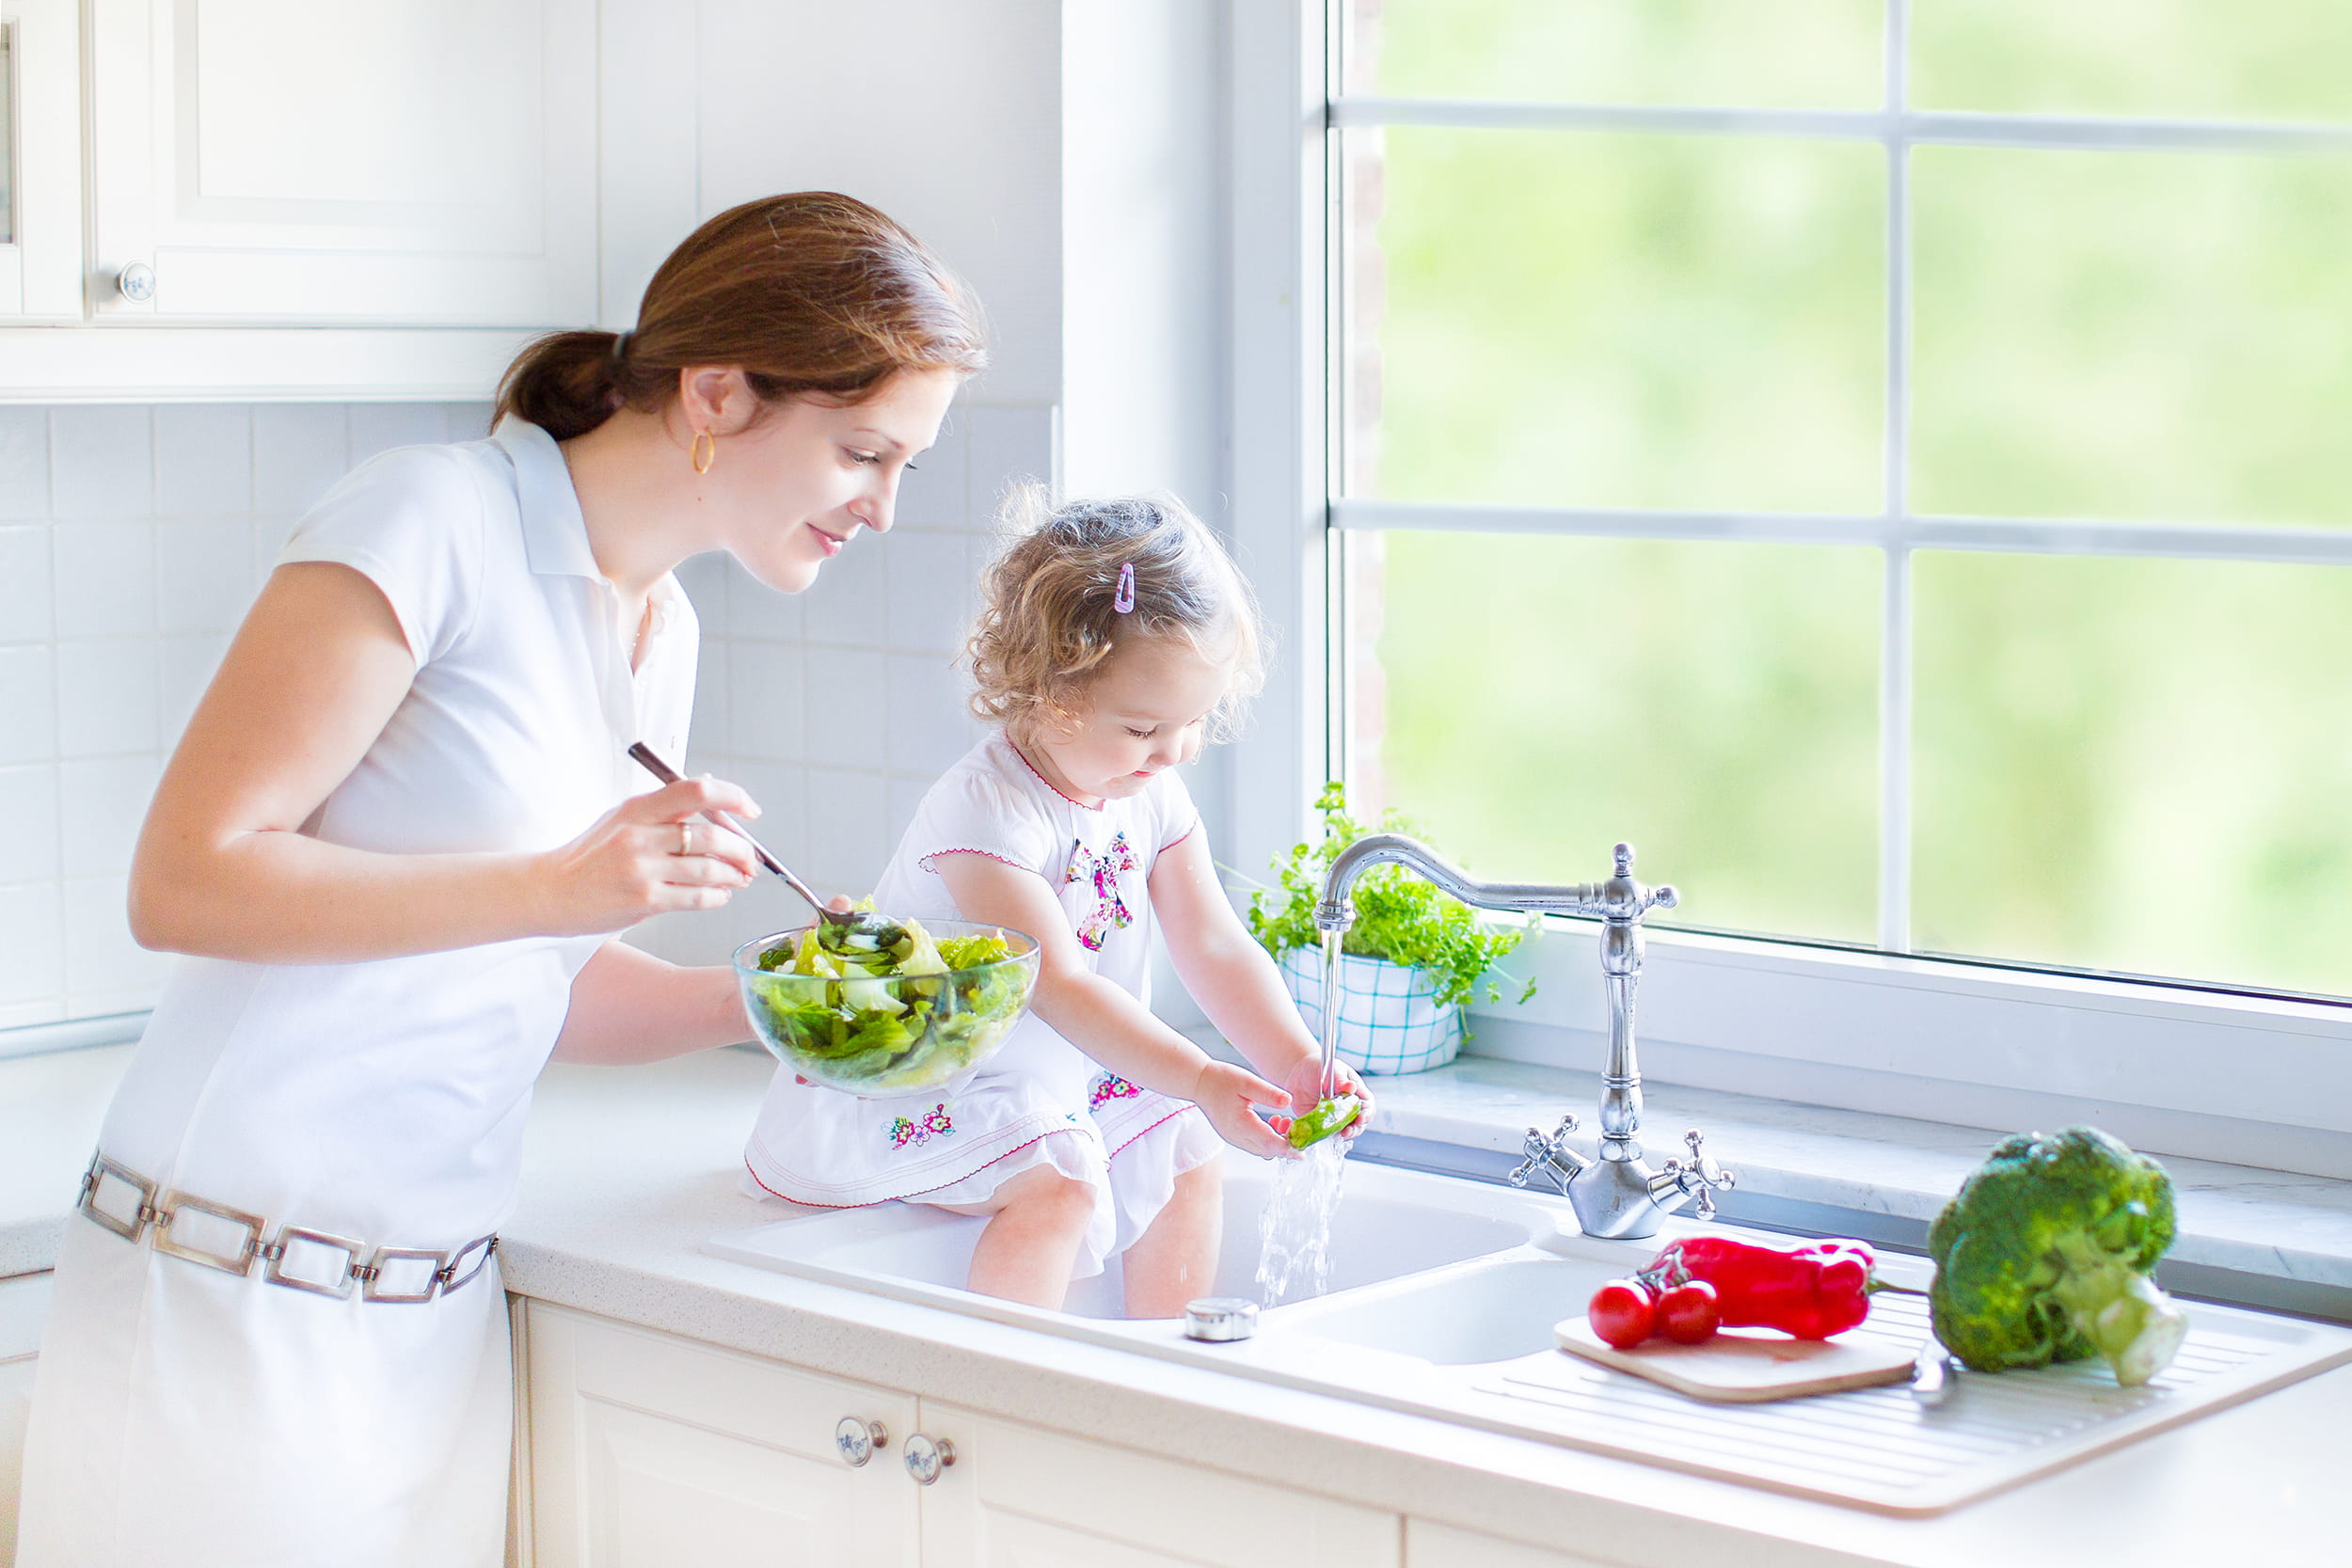 Criança sentada na pia lavando vegetais com sua mãe